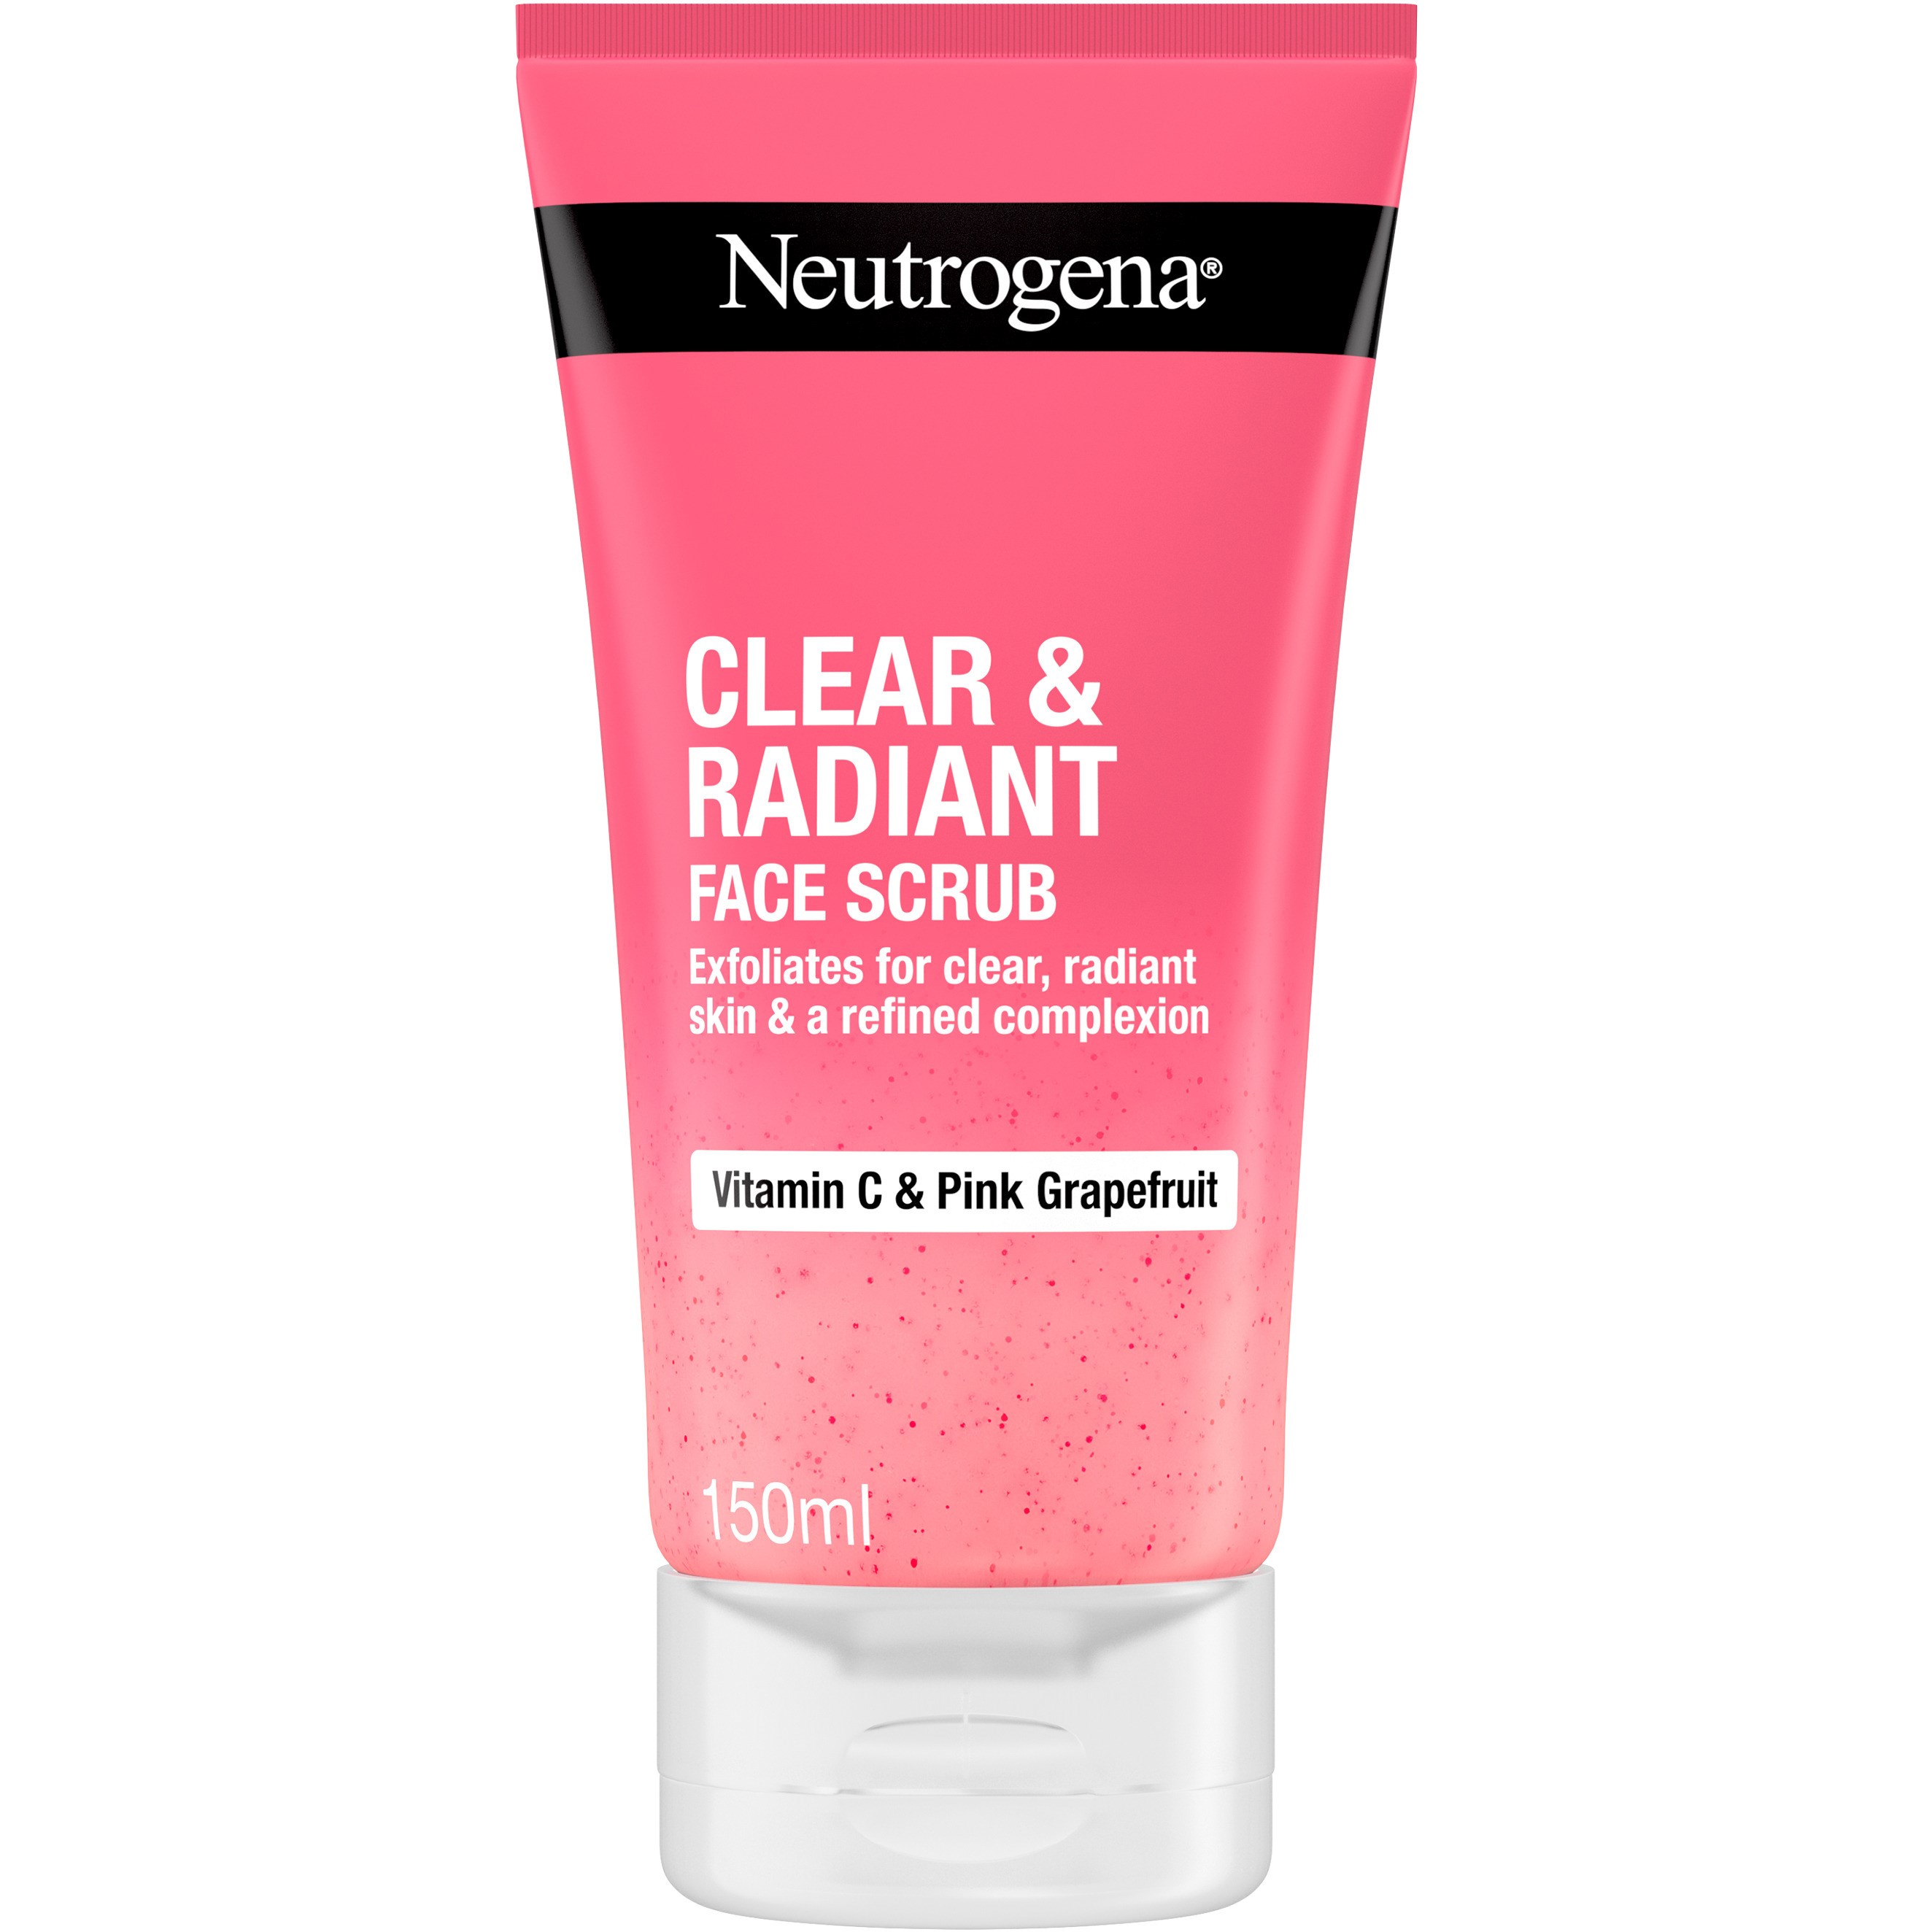 Zdjęcia - Produkt do mycia twarzy i ciała Neutrogena Clear & Radiant Face Scrub 150 ml 